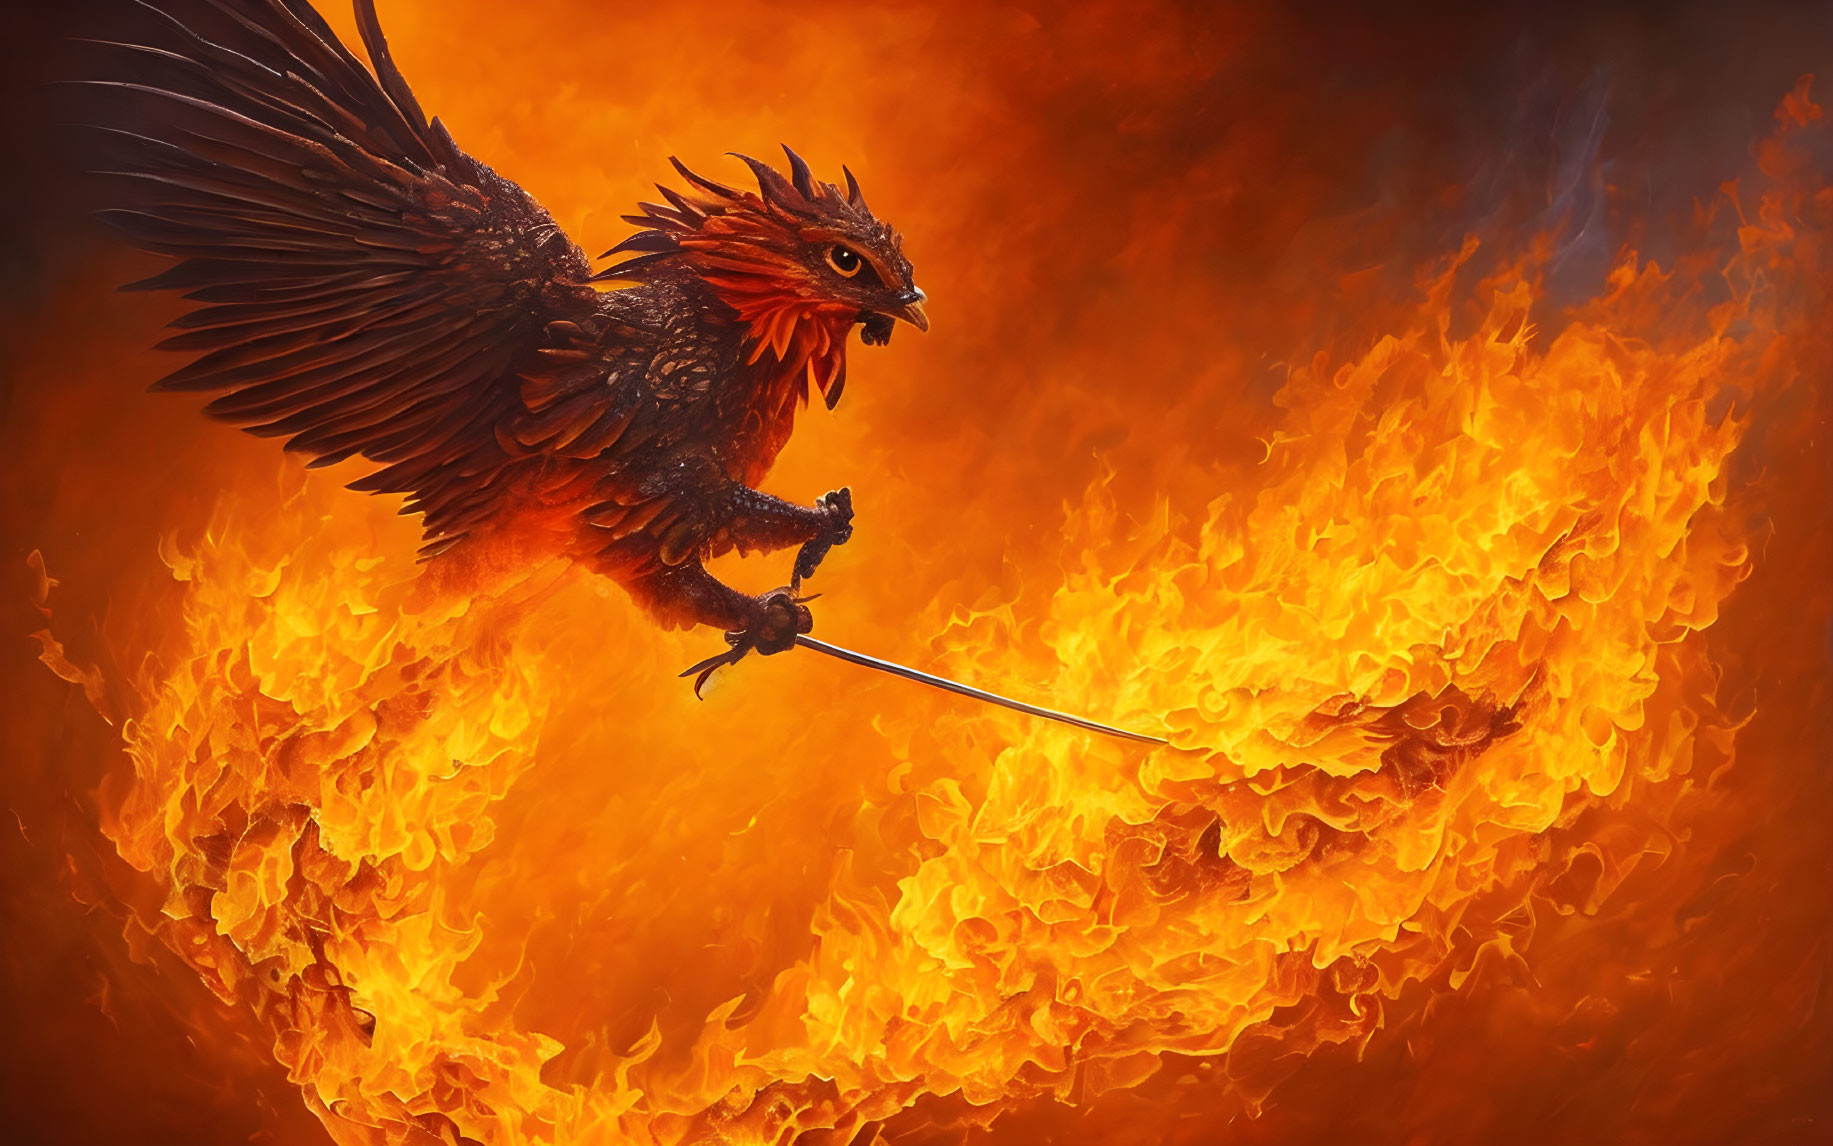 Fiery phoenix with sword in blazing flames